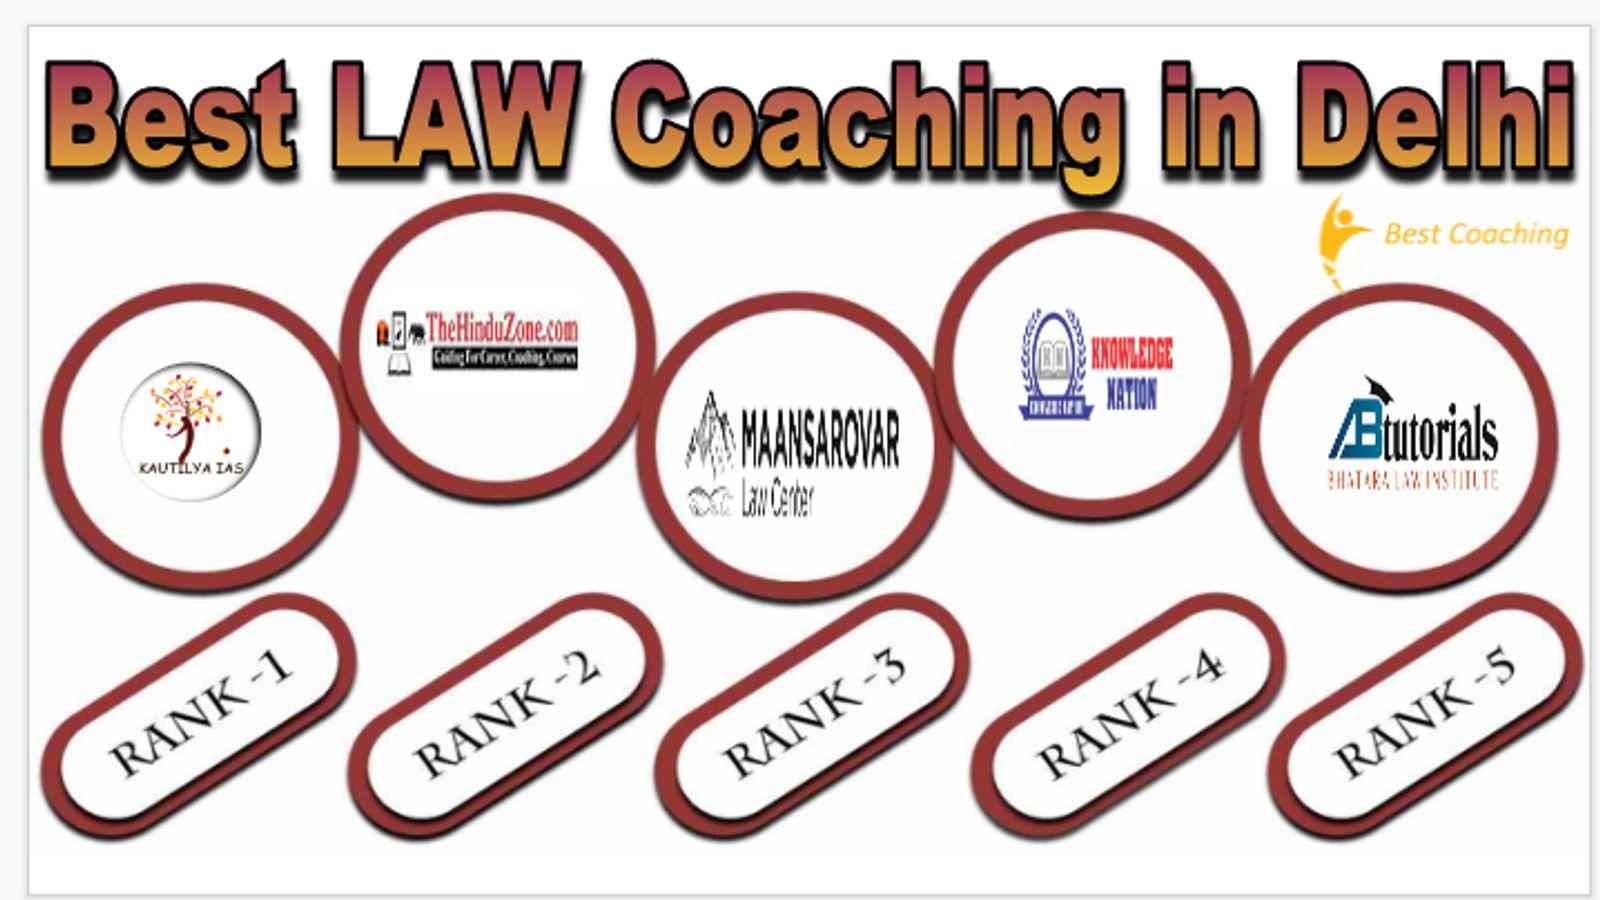 Best law Coaching in Delhi